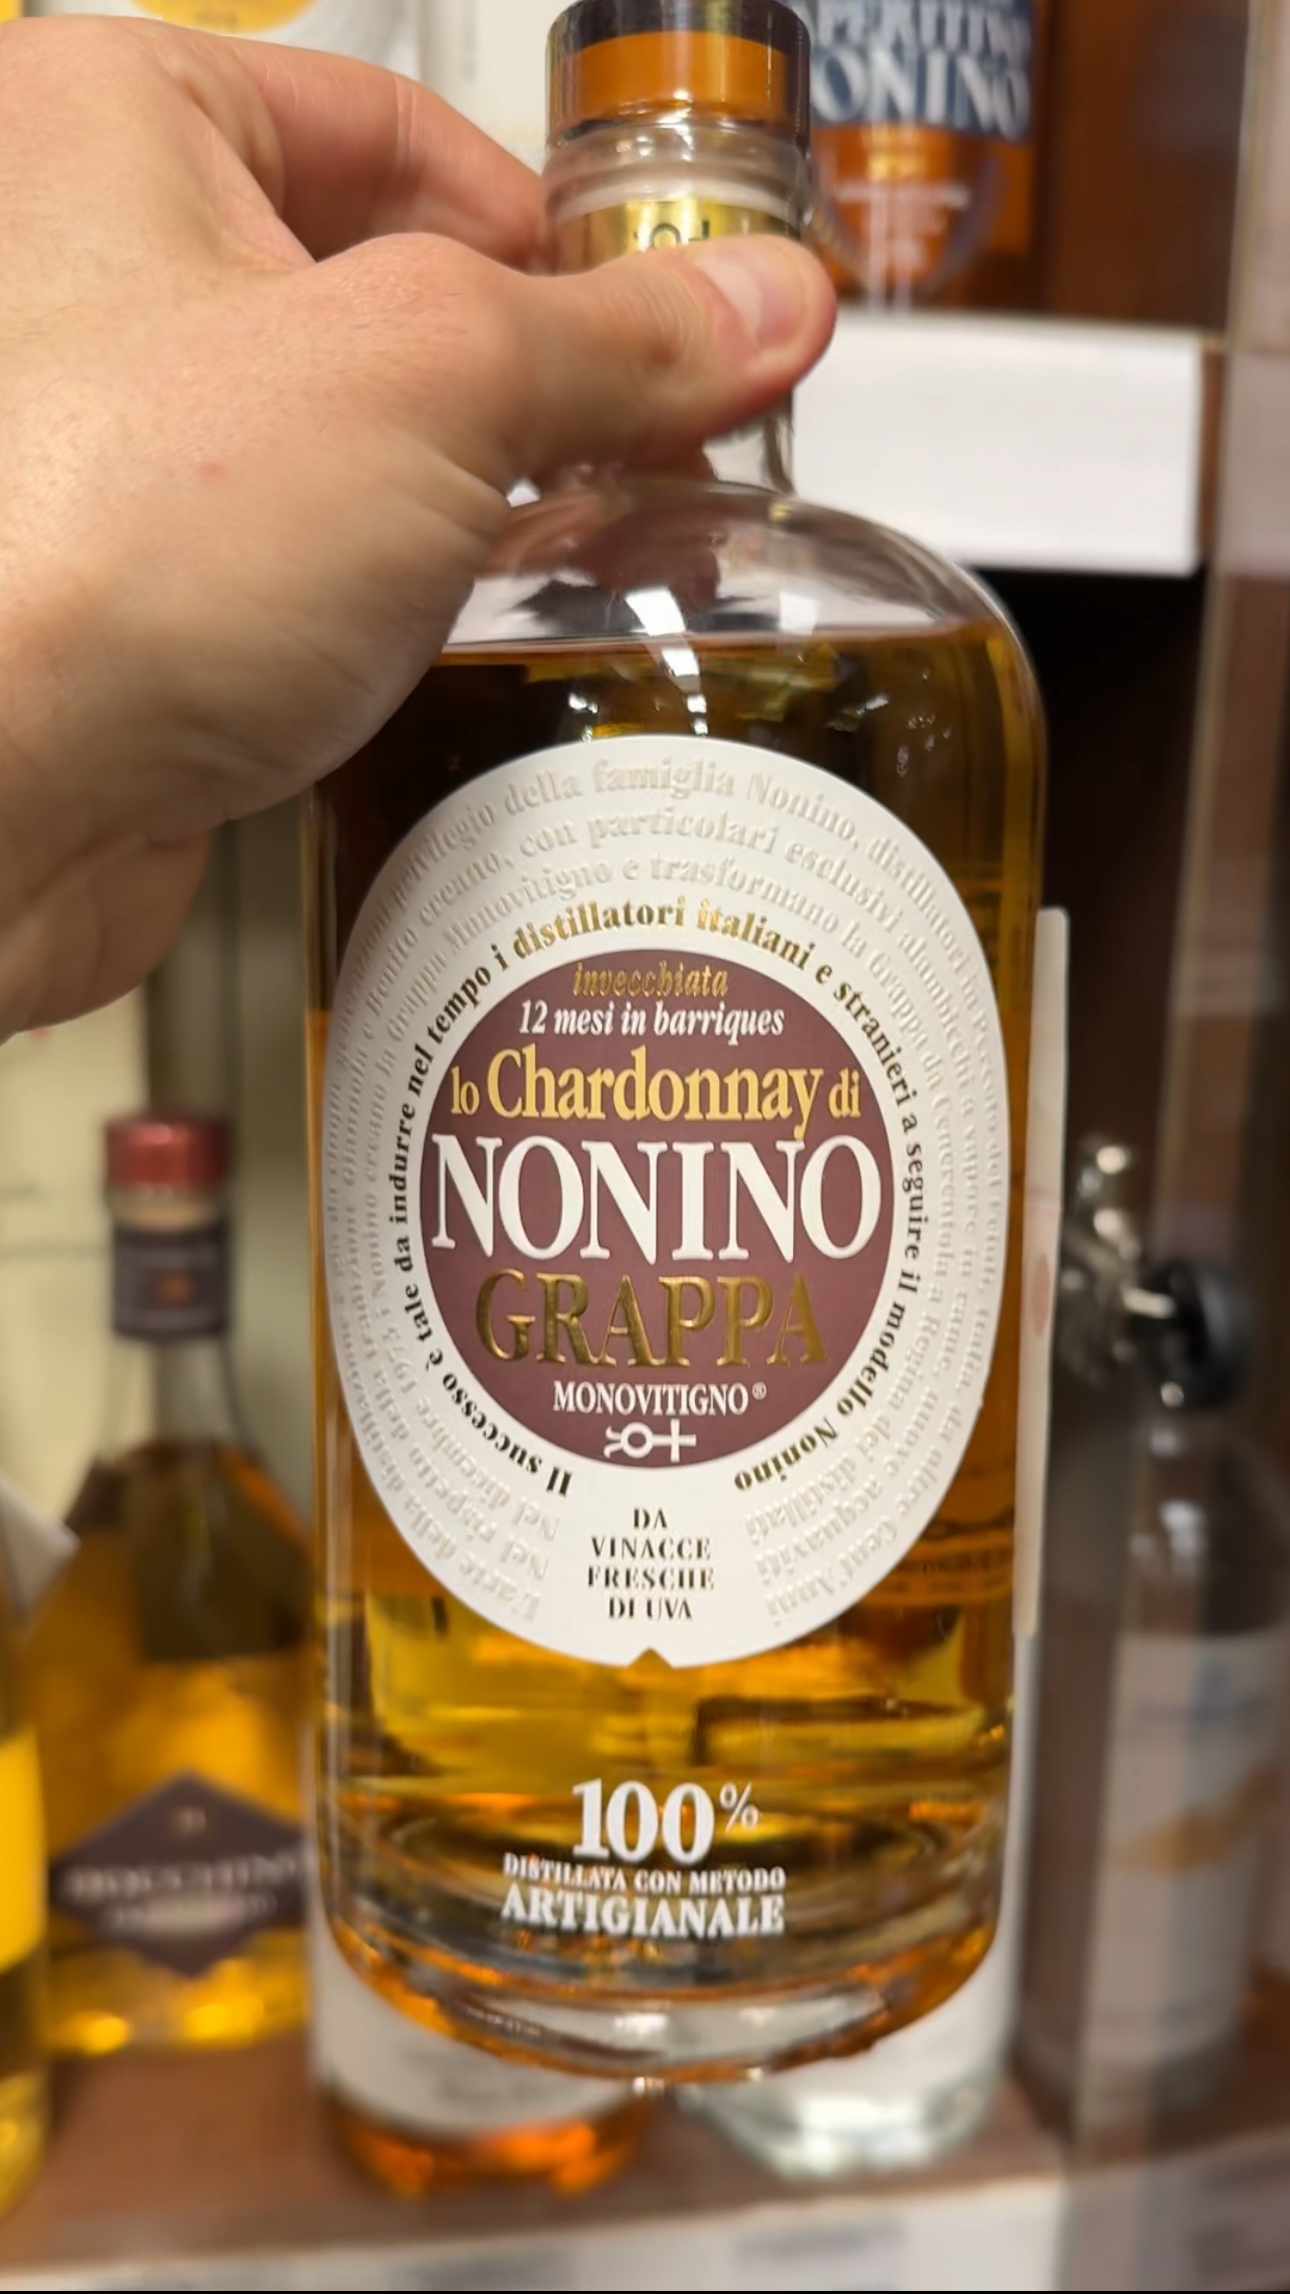 Lo Chardonnay di Nonino in Barriques Monovitigno Граппа Ло Шардоне ди Нонино ин баррик Моновитиньо 0.7л в подарочной упаковке